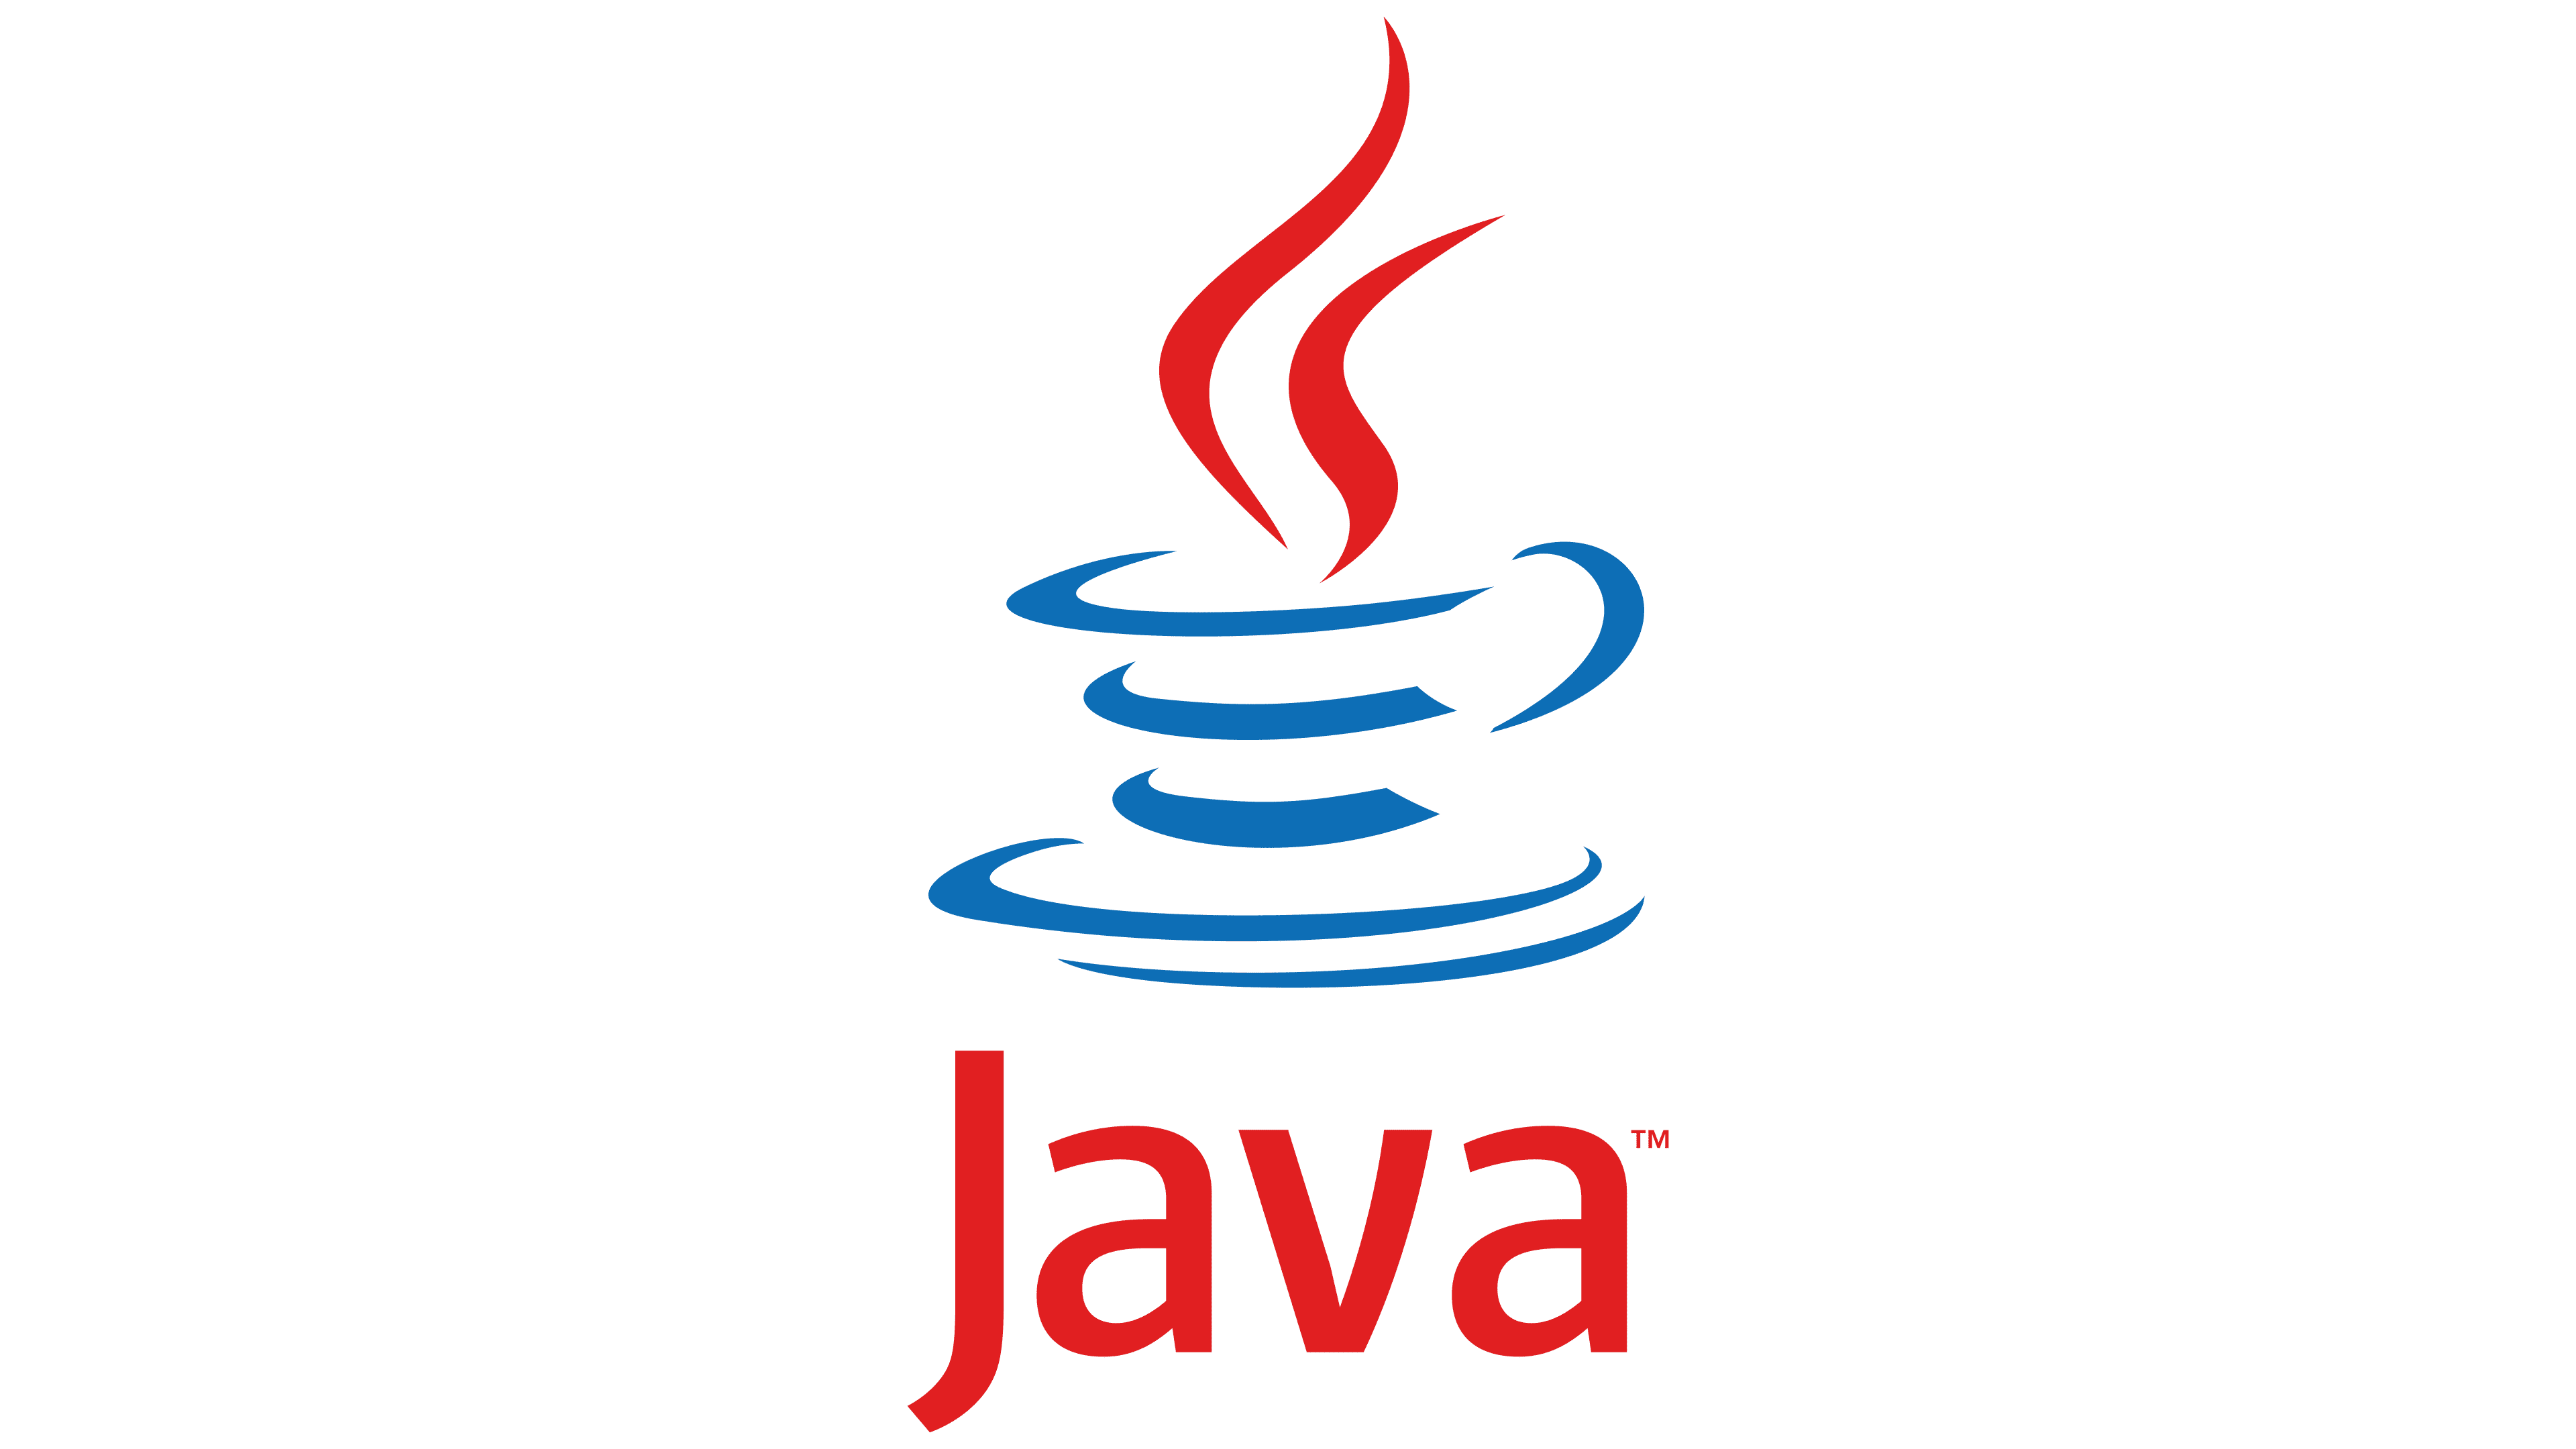 R java. Java язык программирования логотип. Jvaязык программирования логотип. Иконка java. Иконки языков программирования java.